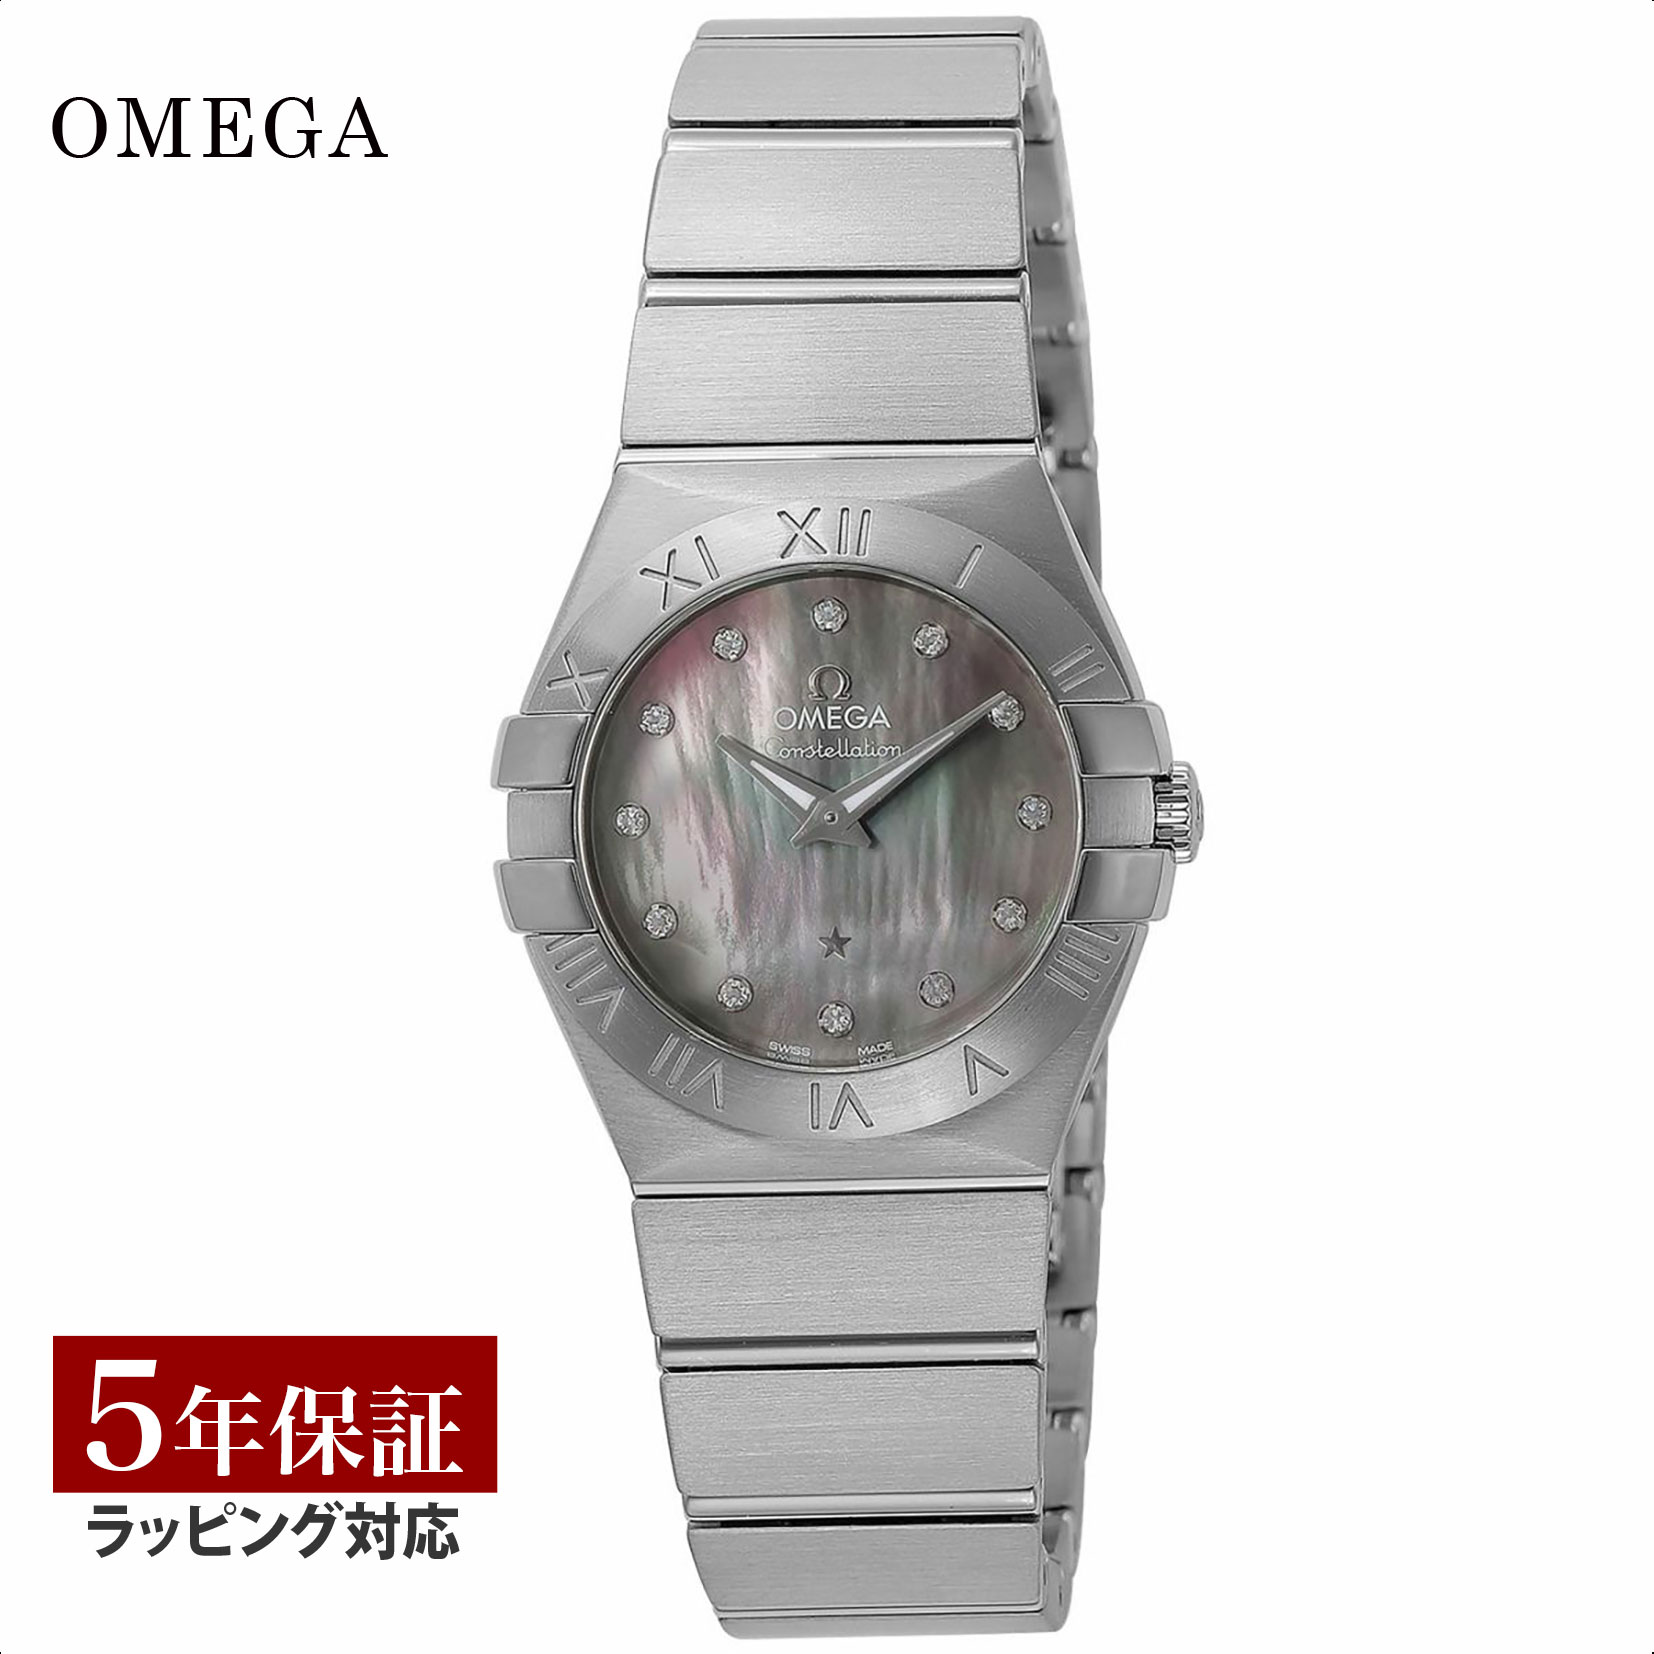 OMEGA オメガ コンステレーション クォーツ メンズ グレー 123.10.27.60.57.003 時計 腕時計 高級腕時計 ブランド